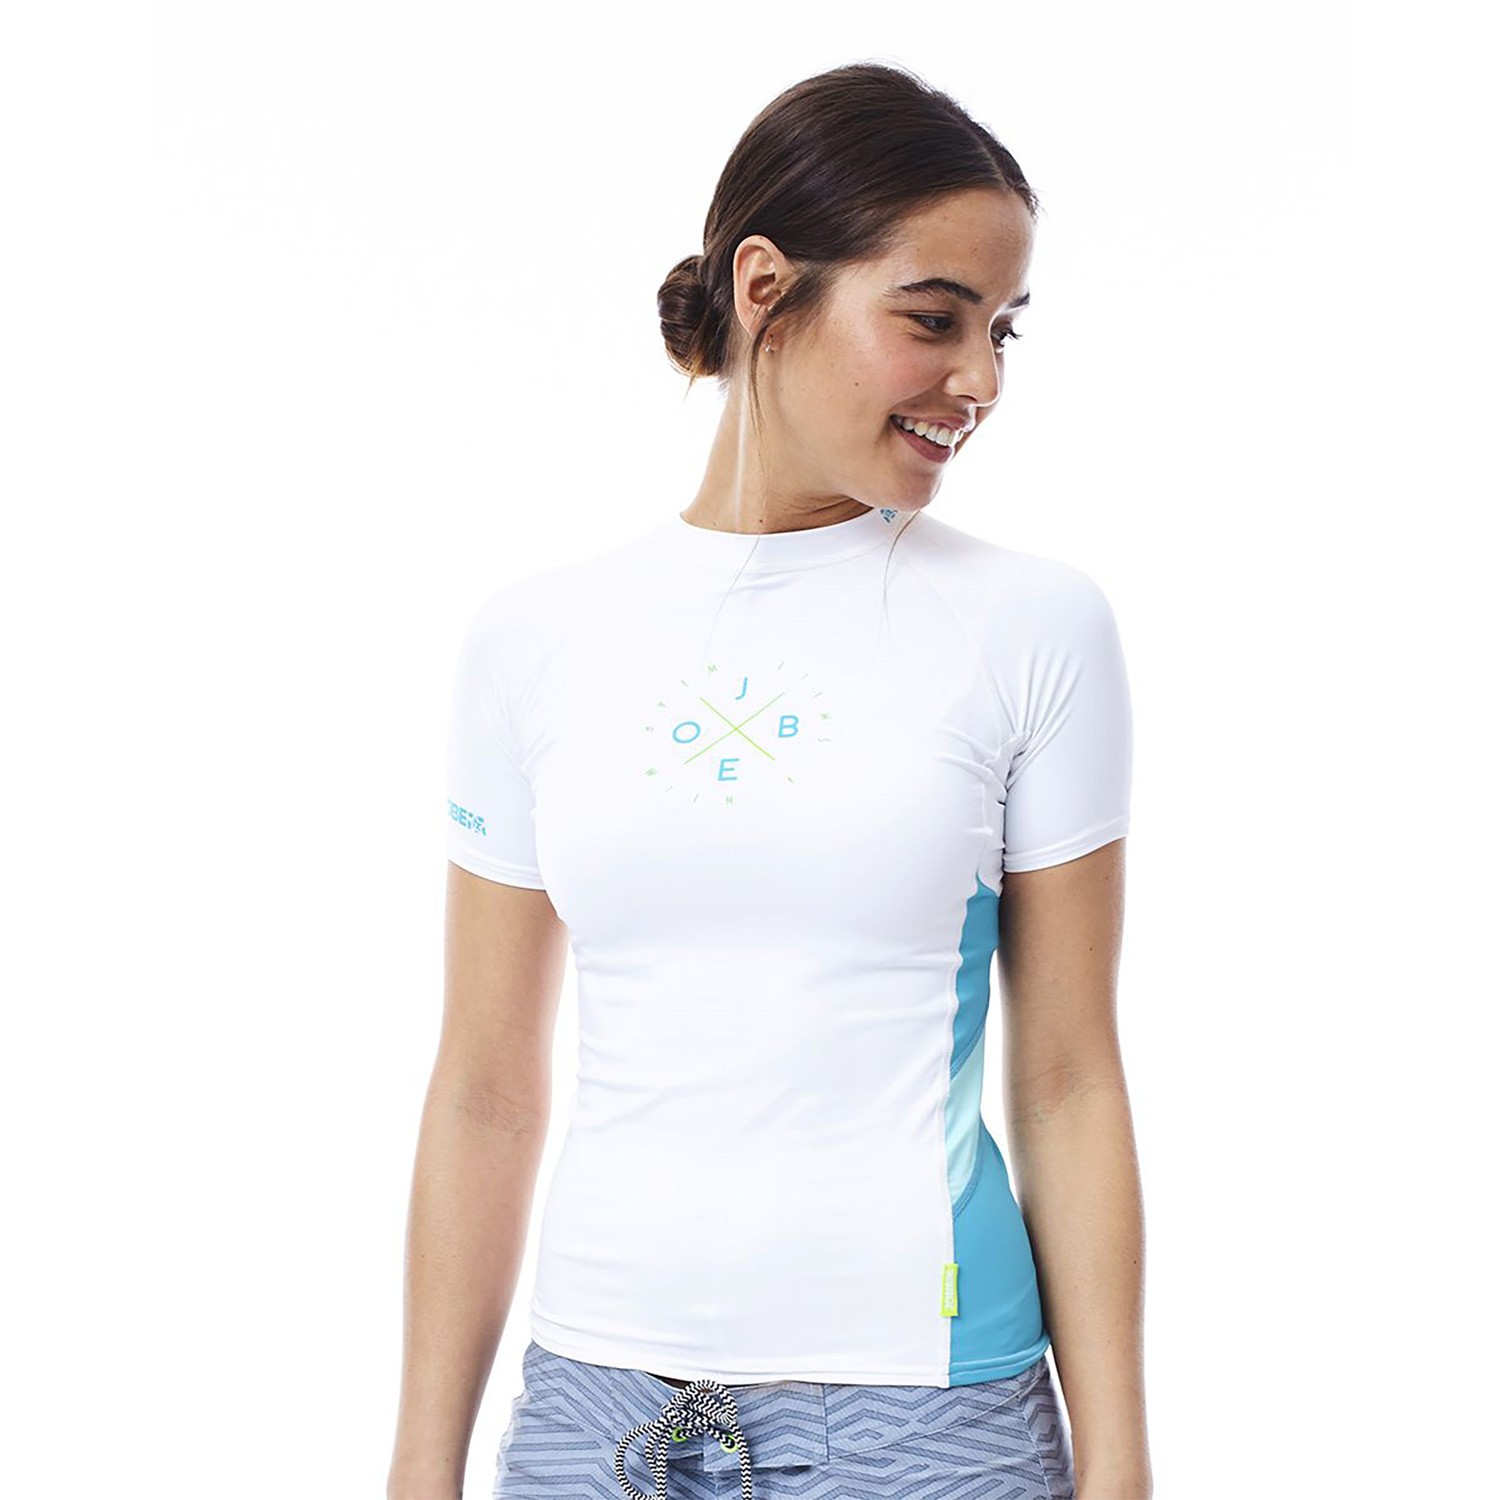 Jobe Camiseta Protección Solar Mujer Blanco